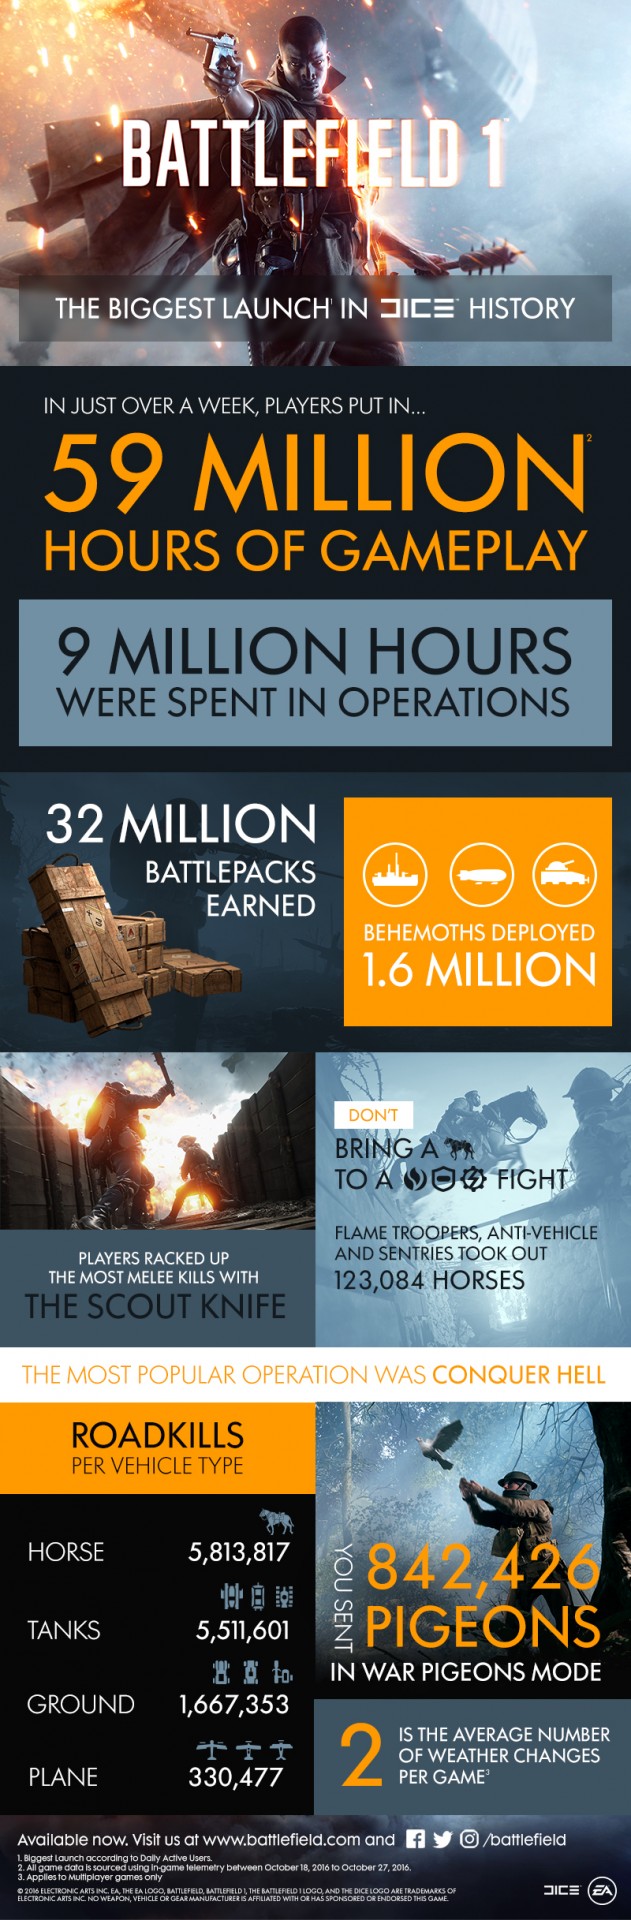 Battlefield 1 - Релиз Battlefield 1 крупнейший в истории DICE - screenshot 1